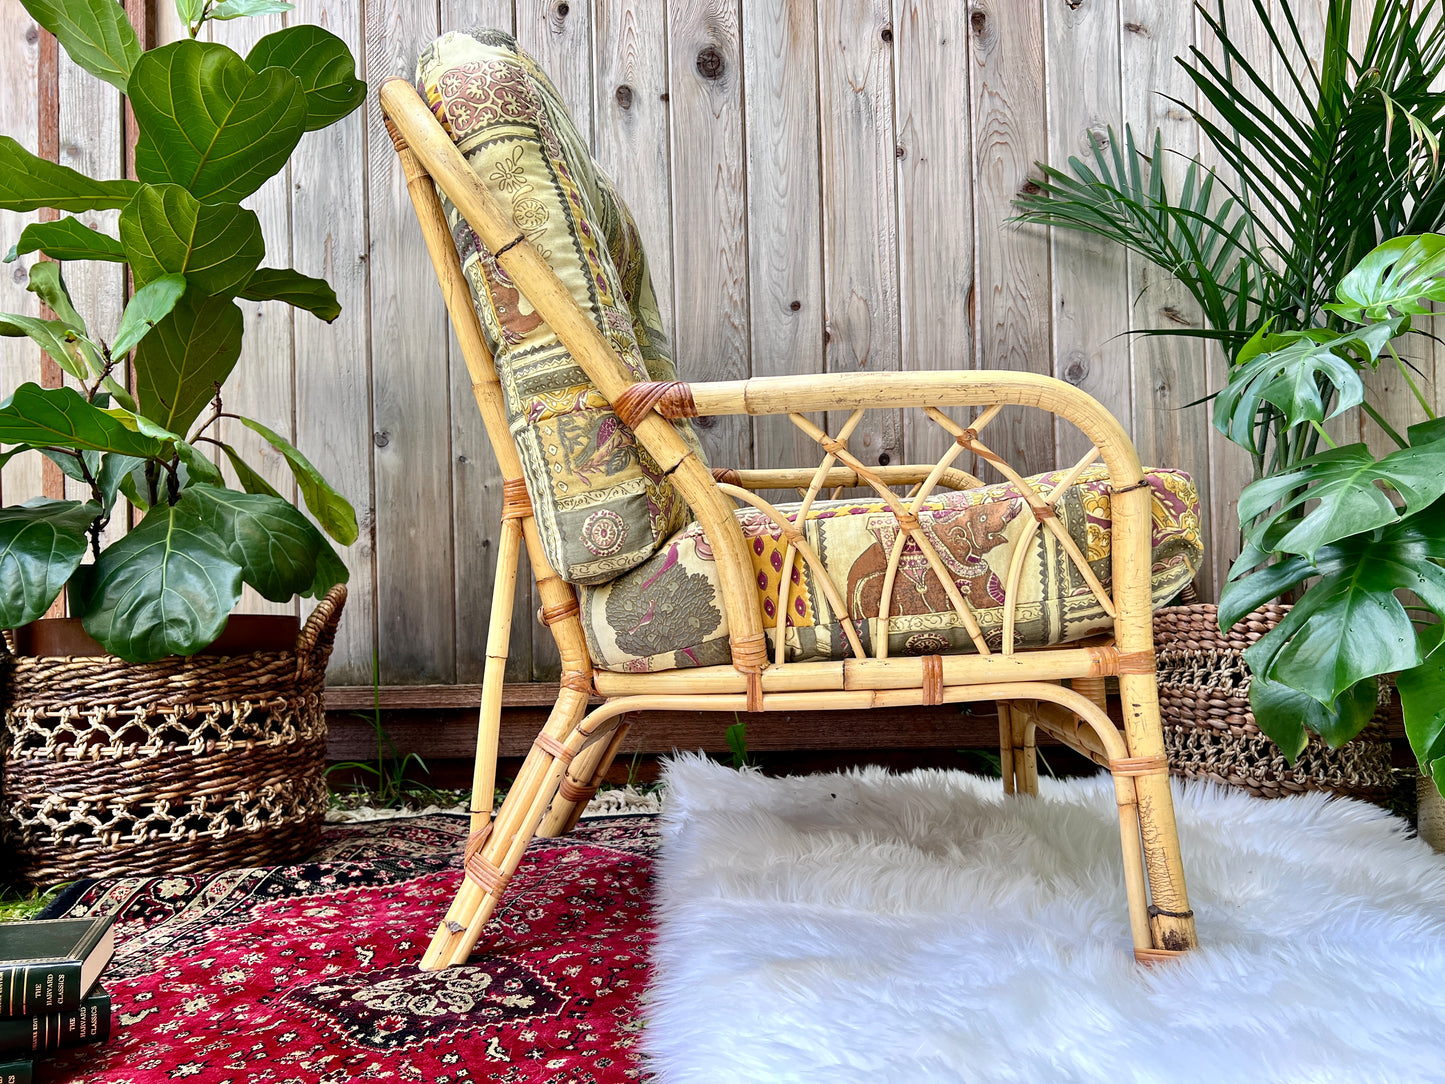 The Chai Spice Chair